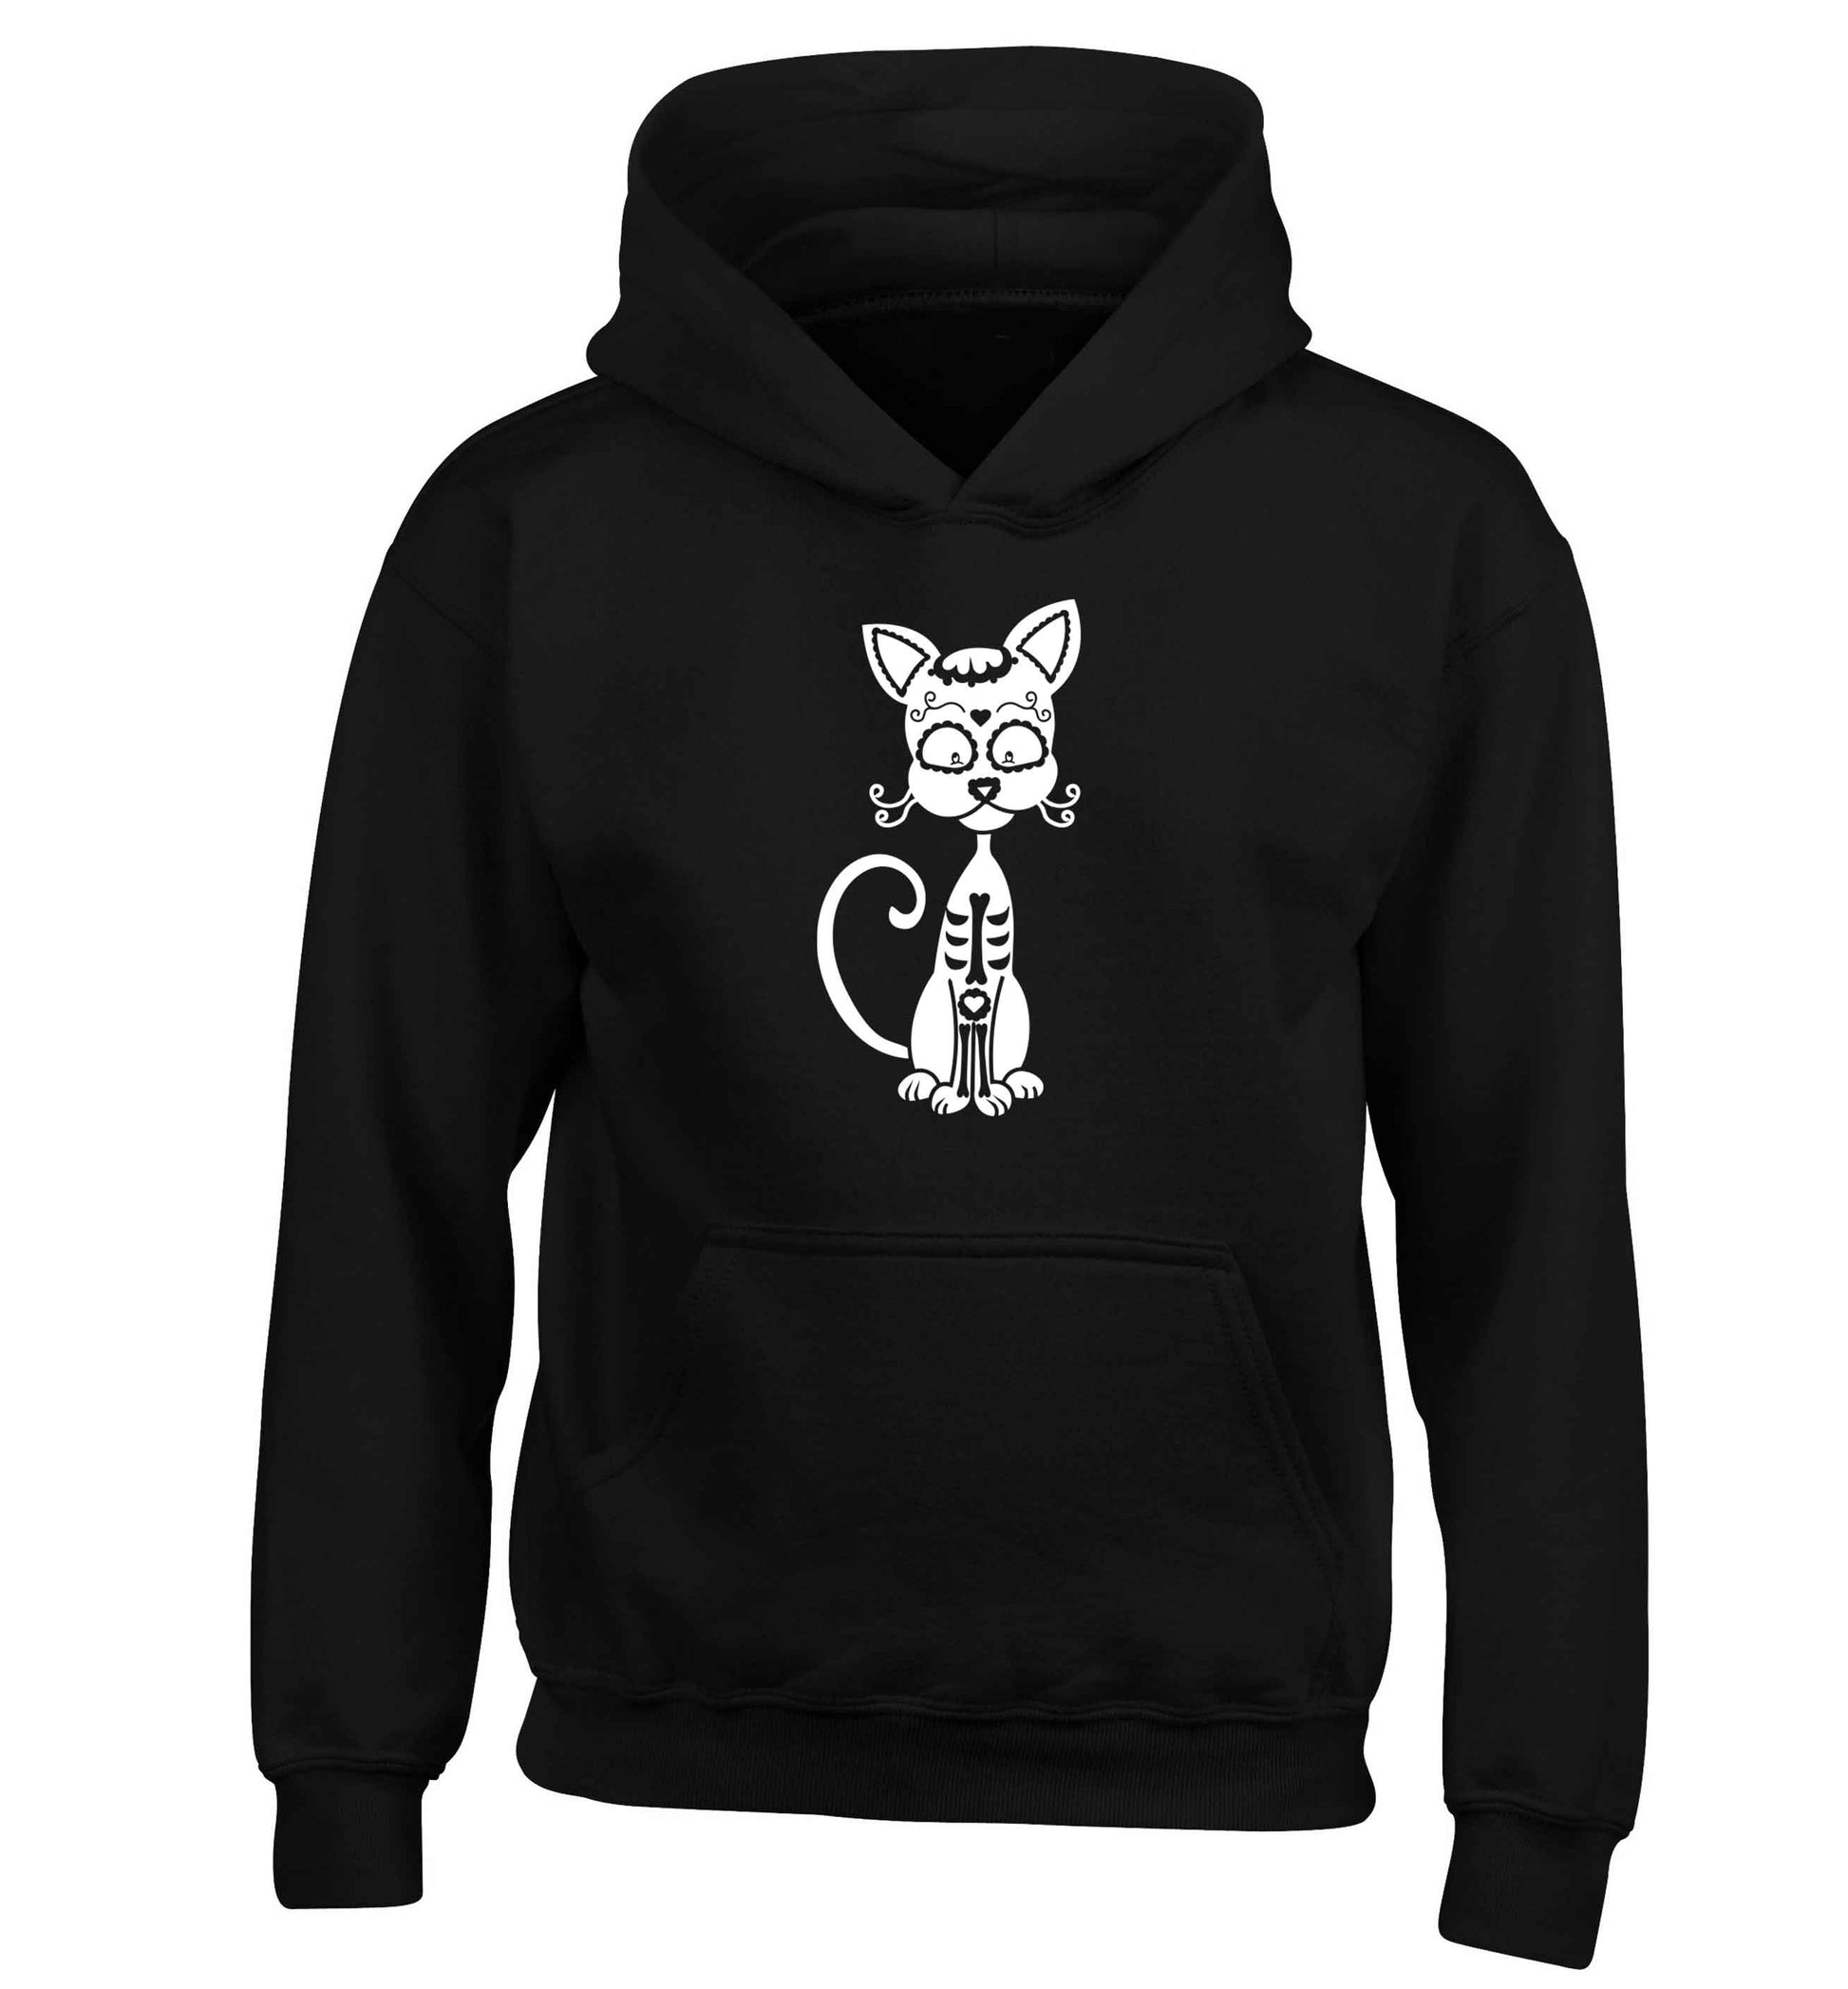 Cat sugar skull children's black hoodie 12-13 Years